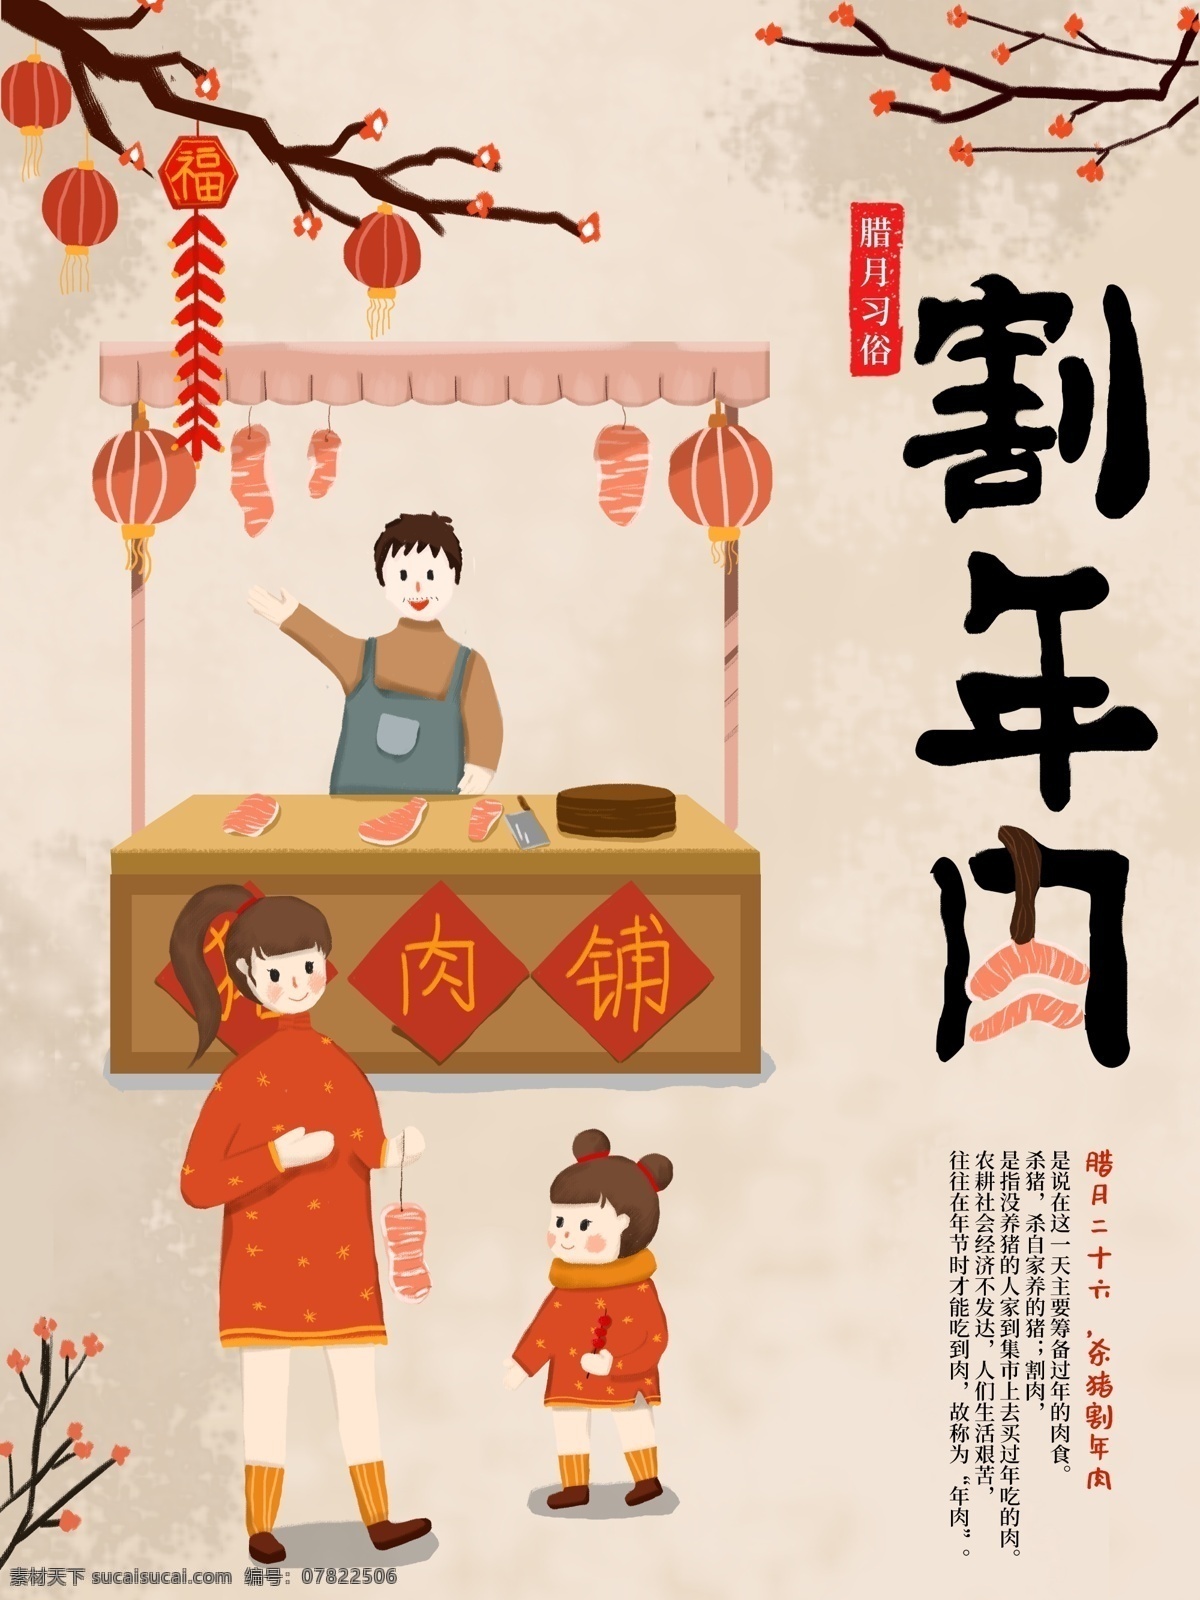 原创 手绘 插画 中国 腊月 习俗 海报 绘画 中国风 复古 宣传 腊月习俗 传统风俗习惯 十二月 过年